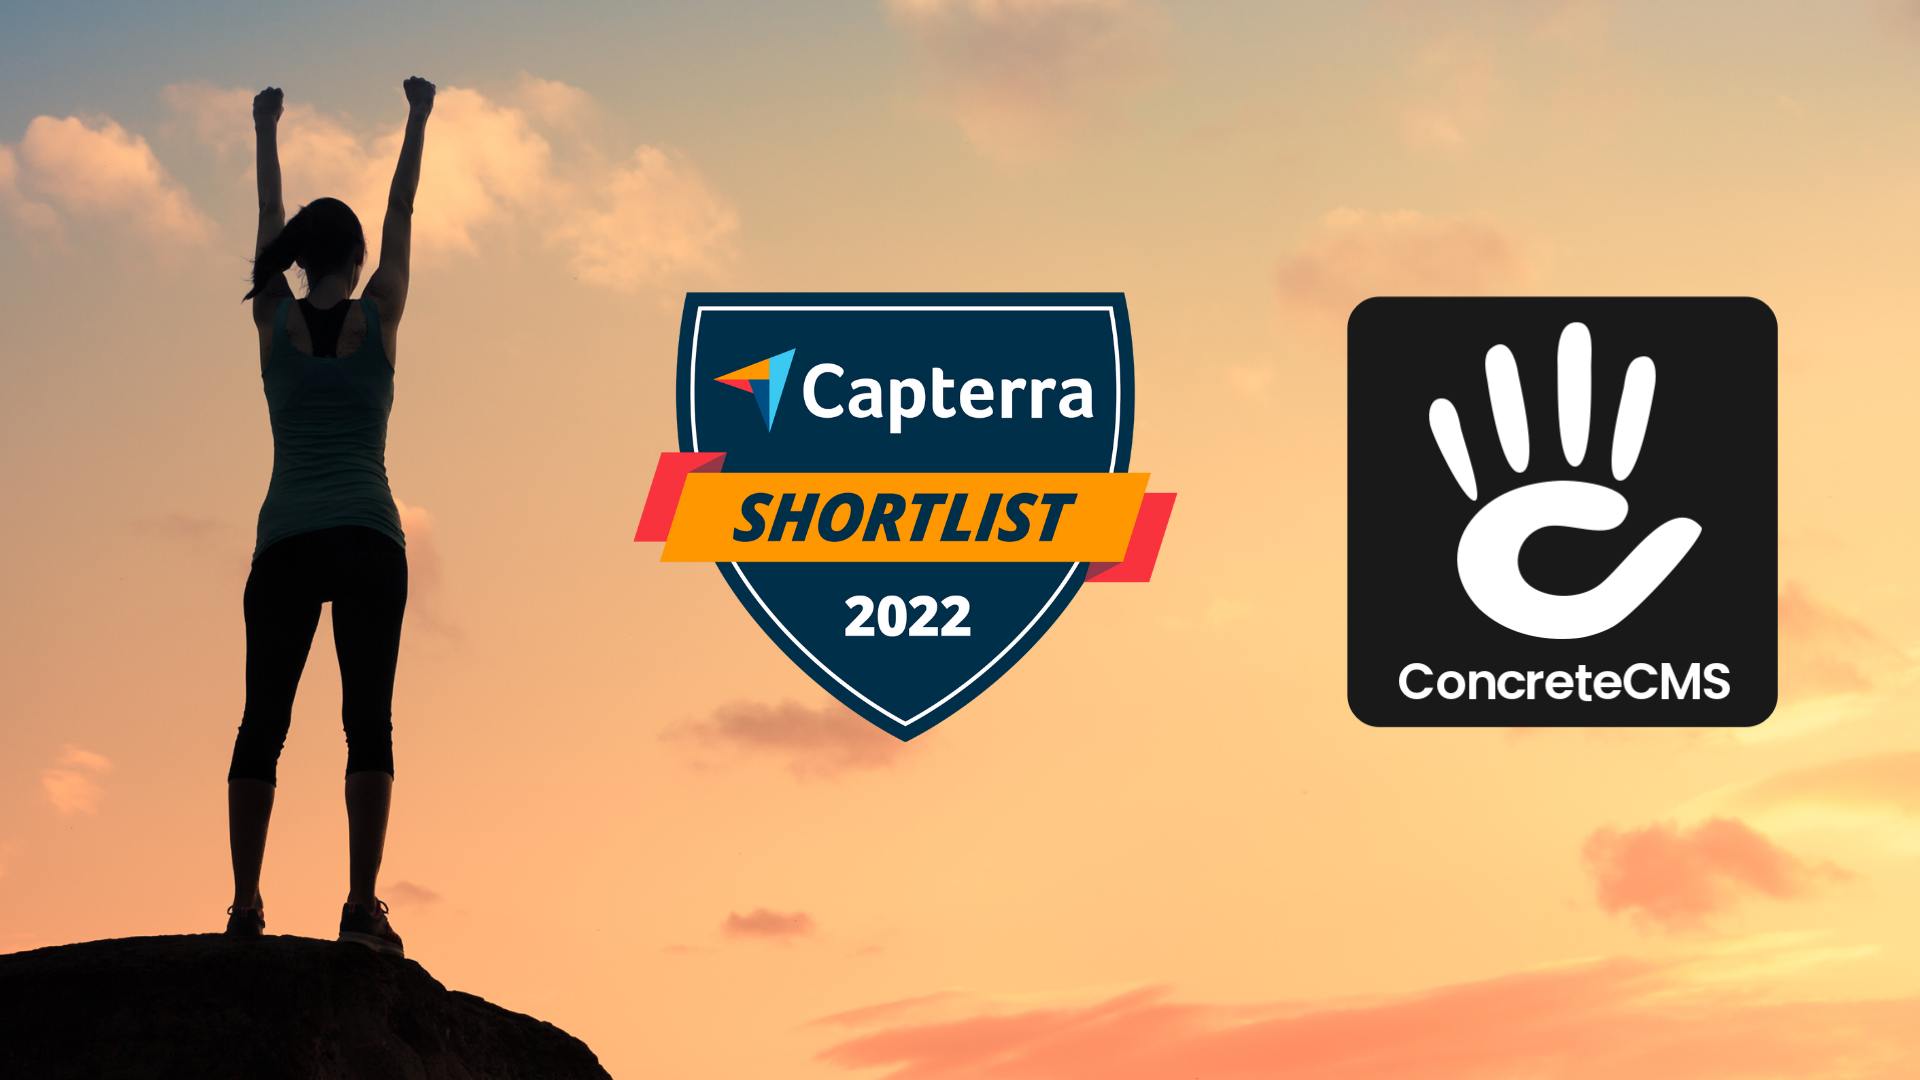 Concrete CMS was a Capterra Shortlist awardee in 2022!